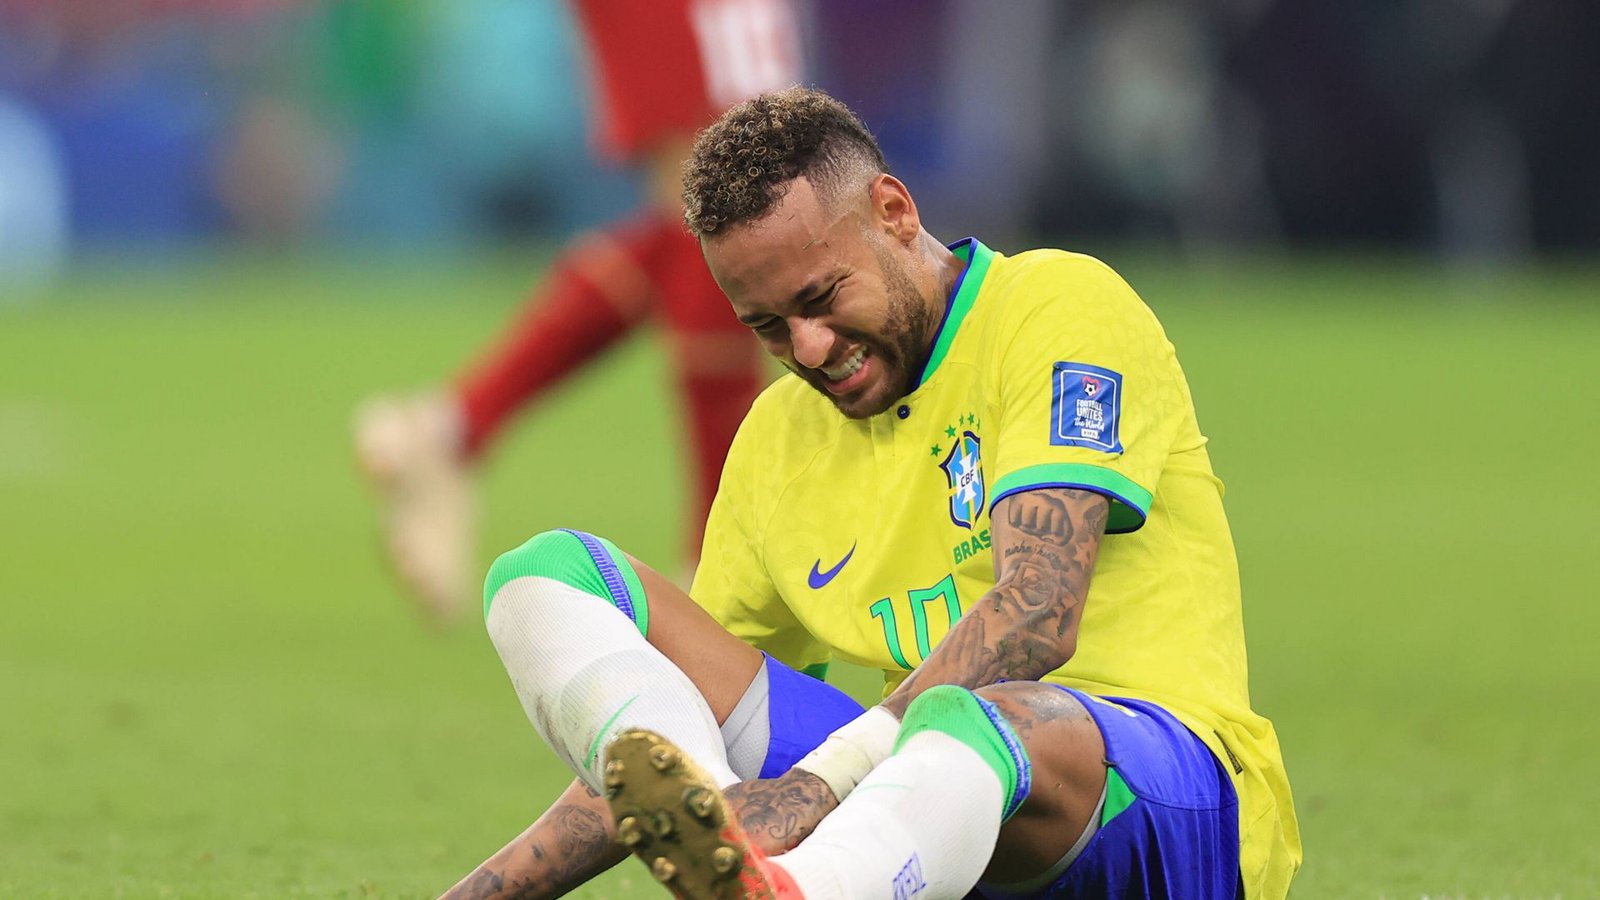 24. November: Brasiliens Superstar Neymar muss im Auftaktspiel gegen Serbien  verletzt ausgewechselt werden. Seine Mannschaft gewinnt dennoch 2:0.Foto: IMAGO/Offside Sports Photography/IMAGO/Simon Stacpoole